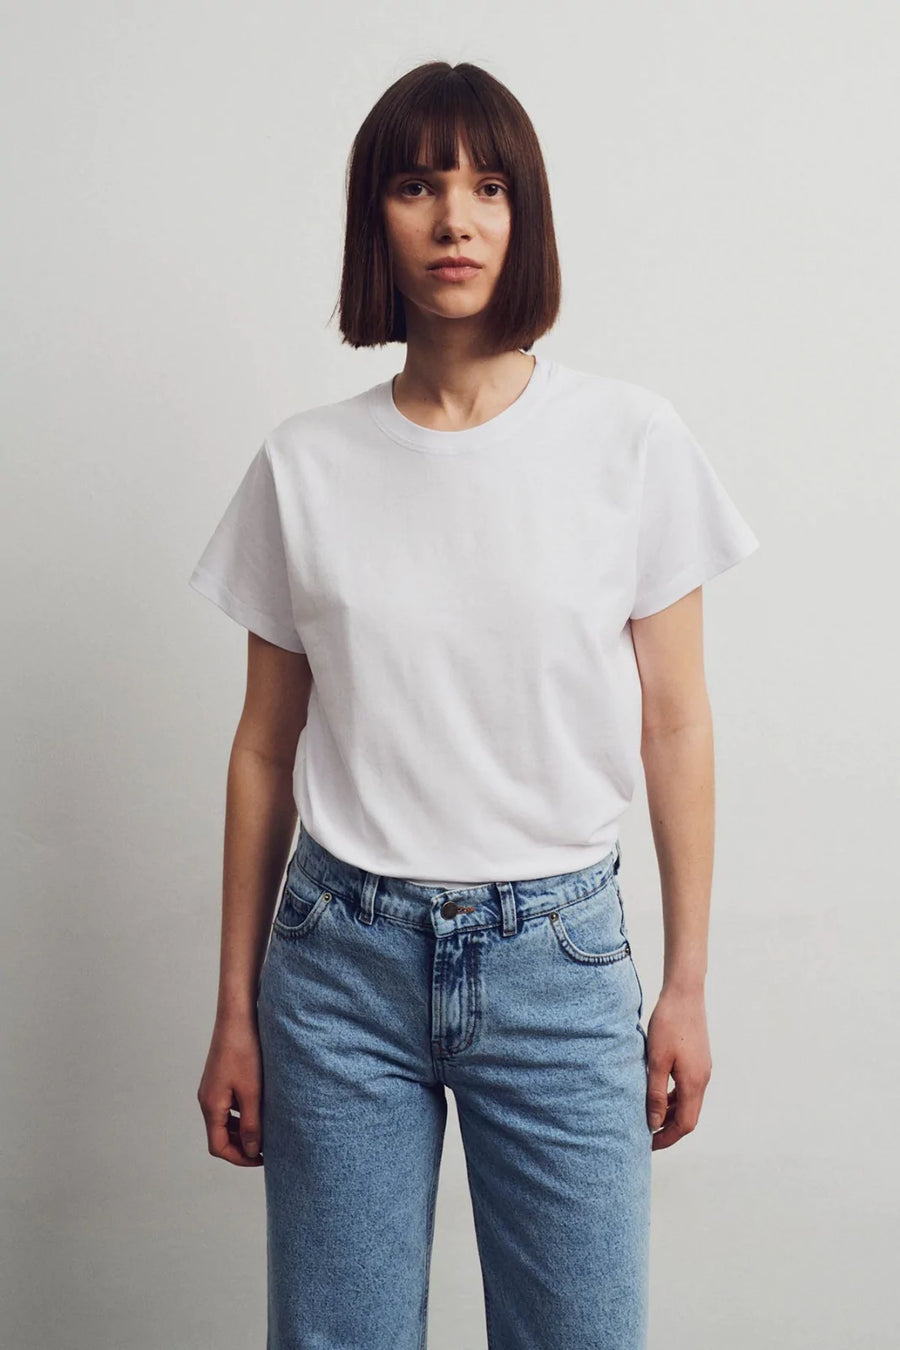 Les Goodies - Elementy Wear Bas T-shirt White